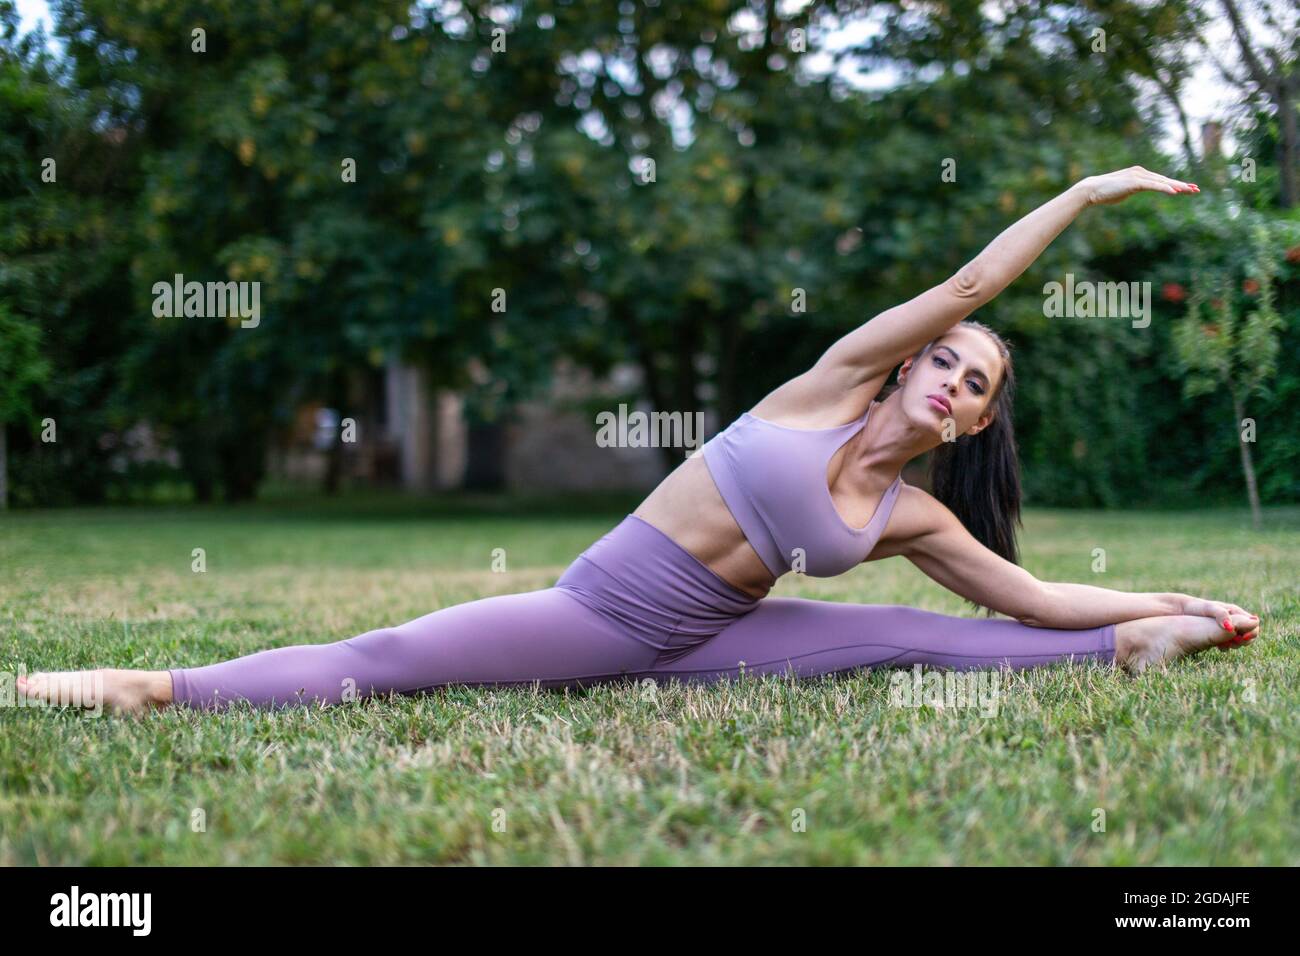 Junge Frau in Sportbekleidung, die sich in gespaltener Haltung im Garten auf Gras, im Freien, ausdehnt Stockfoto